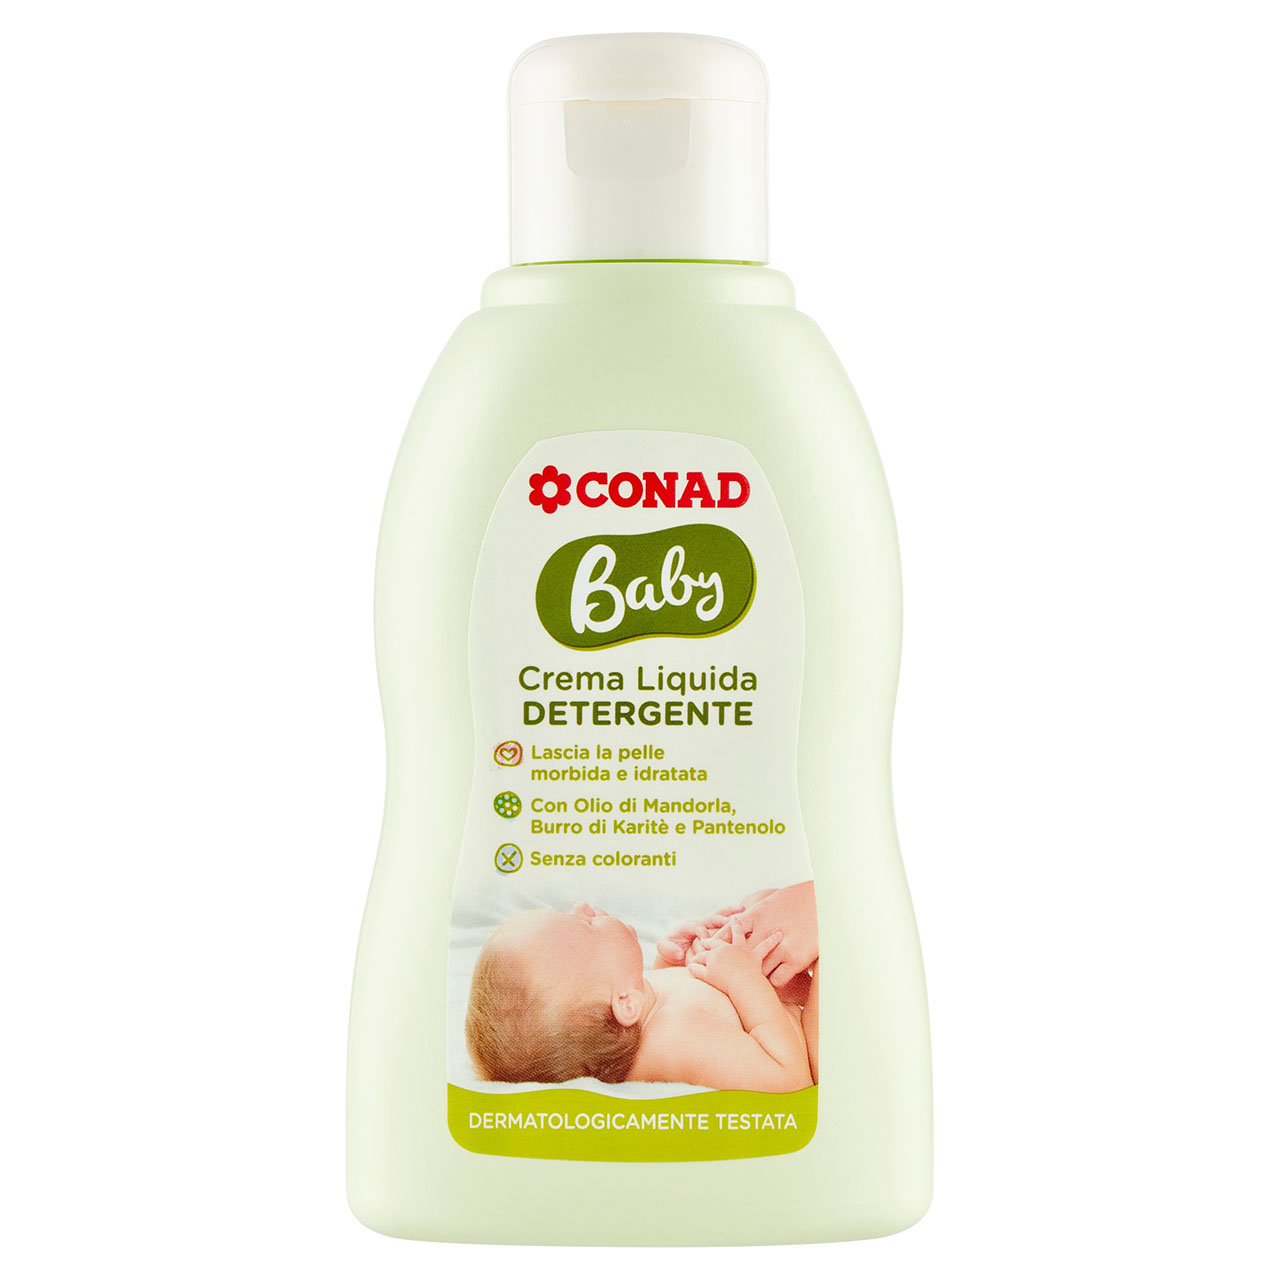 Baby Crema Liquida Detergente 200 ml Conad